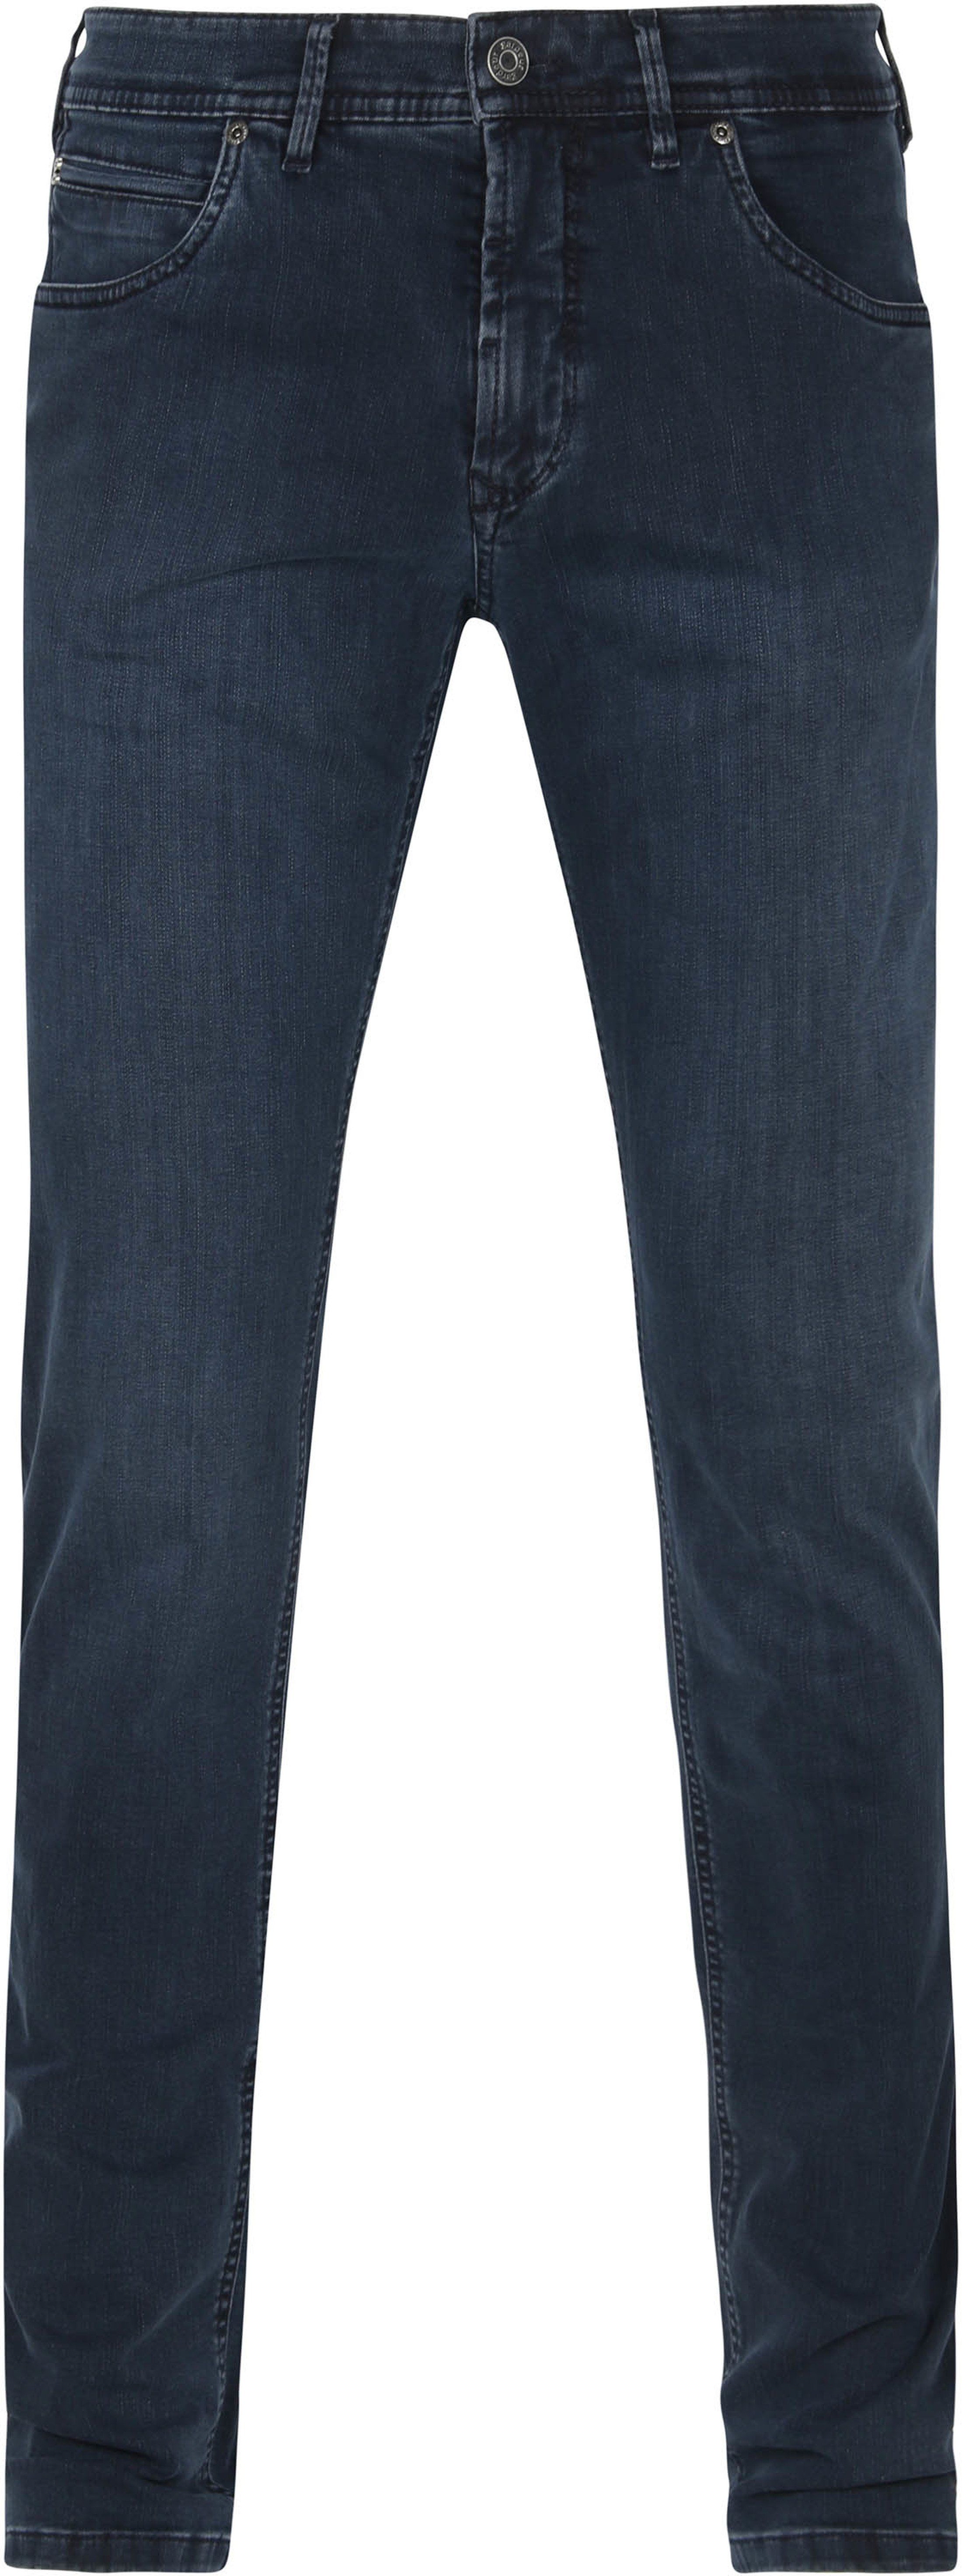 Gardeur Pantalon Bradley Foncé Bleu Bleu foncé taille W 32